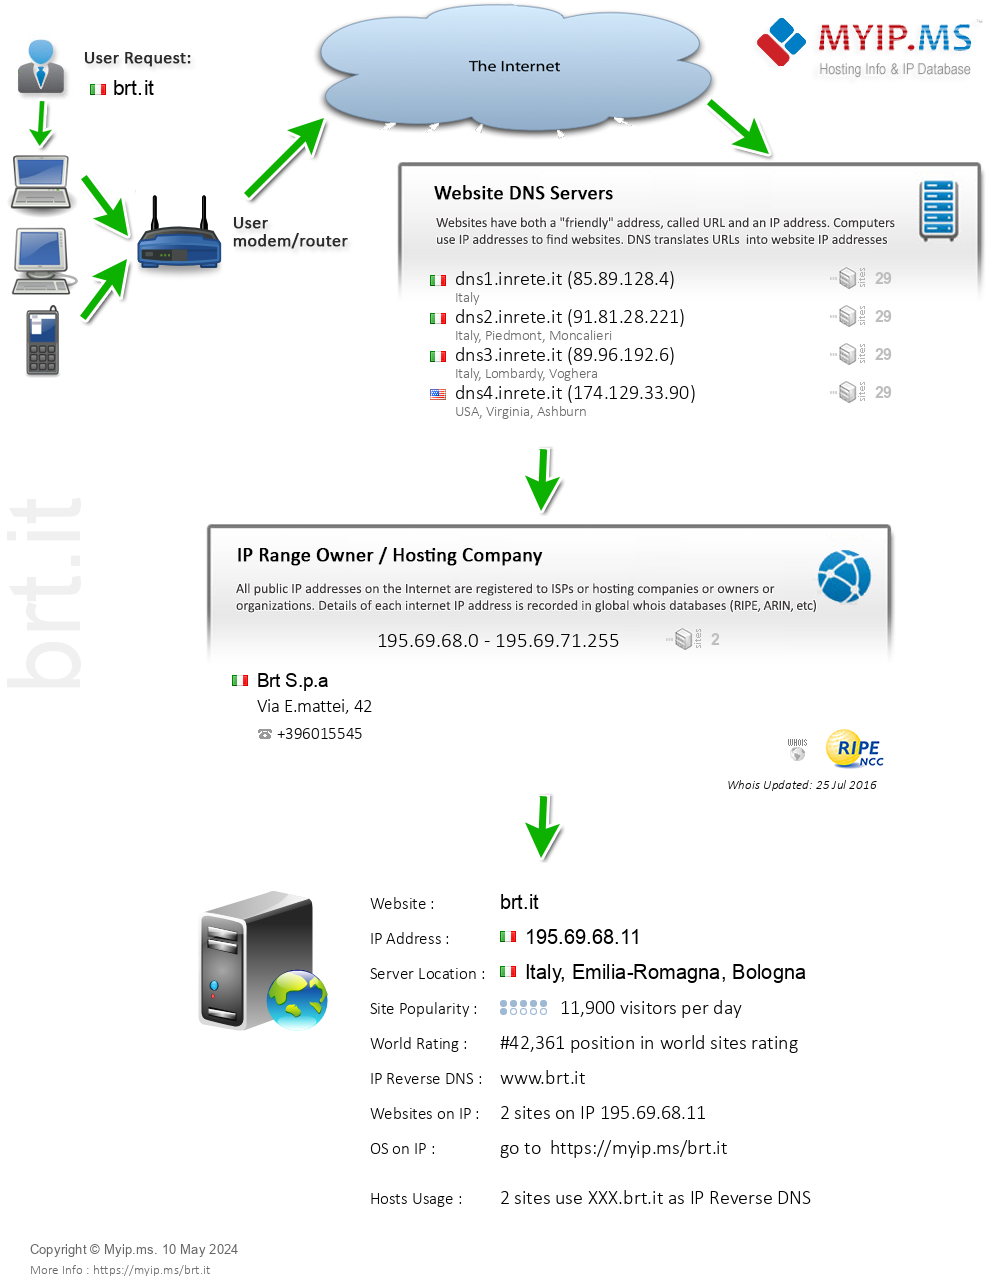 Brt.it - Website Hosting Visual IP Diagram